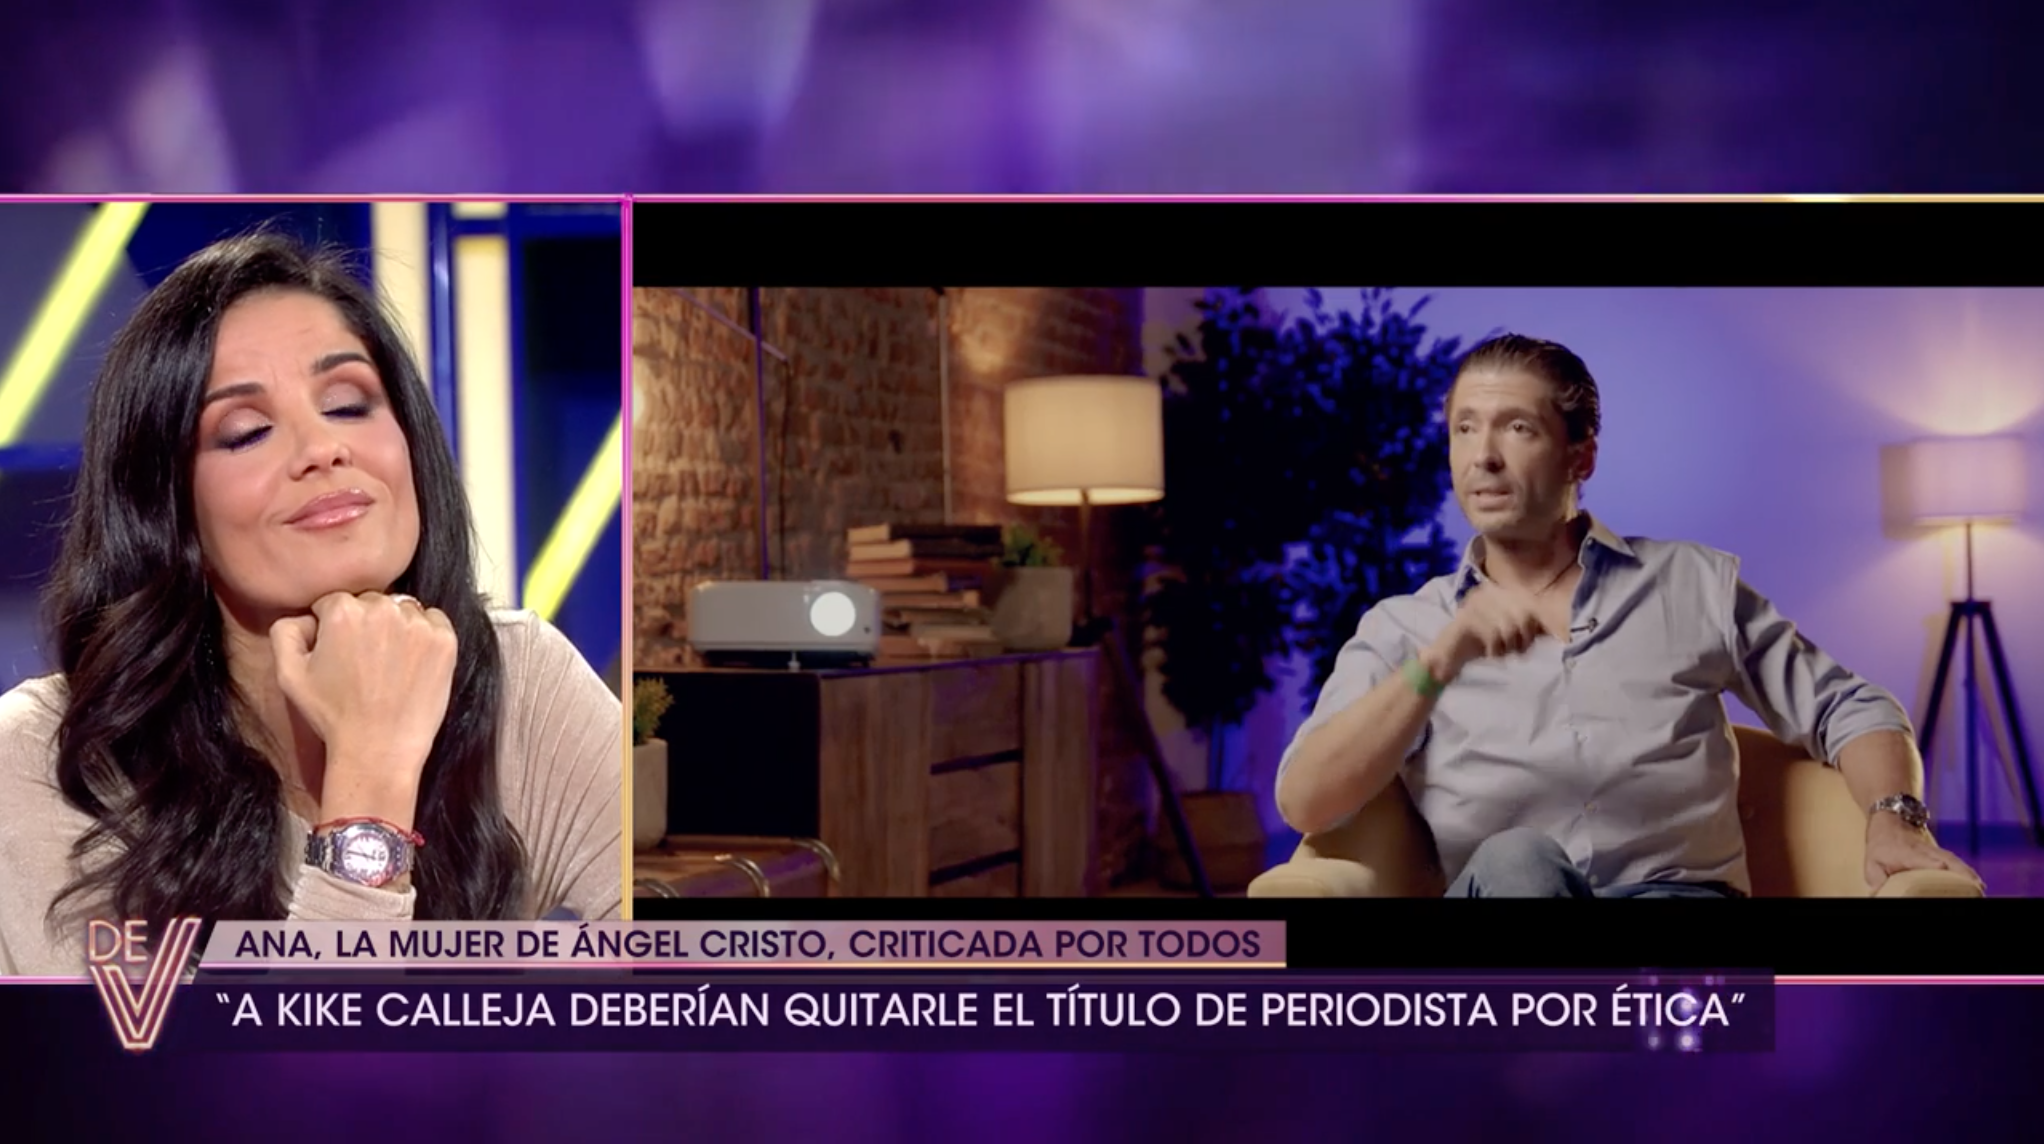 Ángel Cristo durante su entrevista en 'De Viernes' mientras Ana Herminia le veía en plató